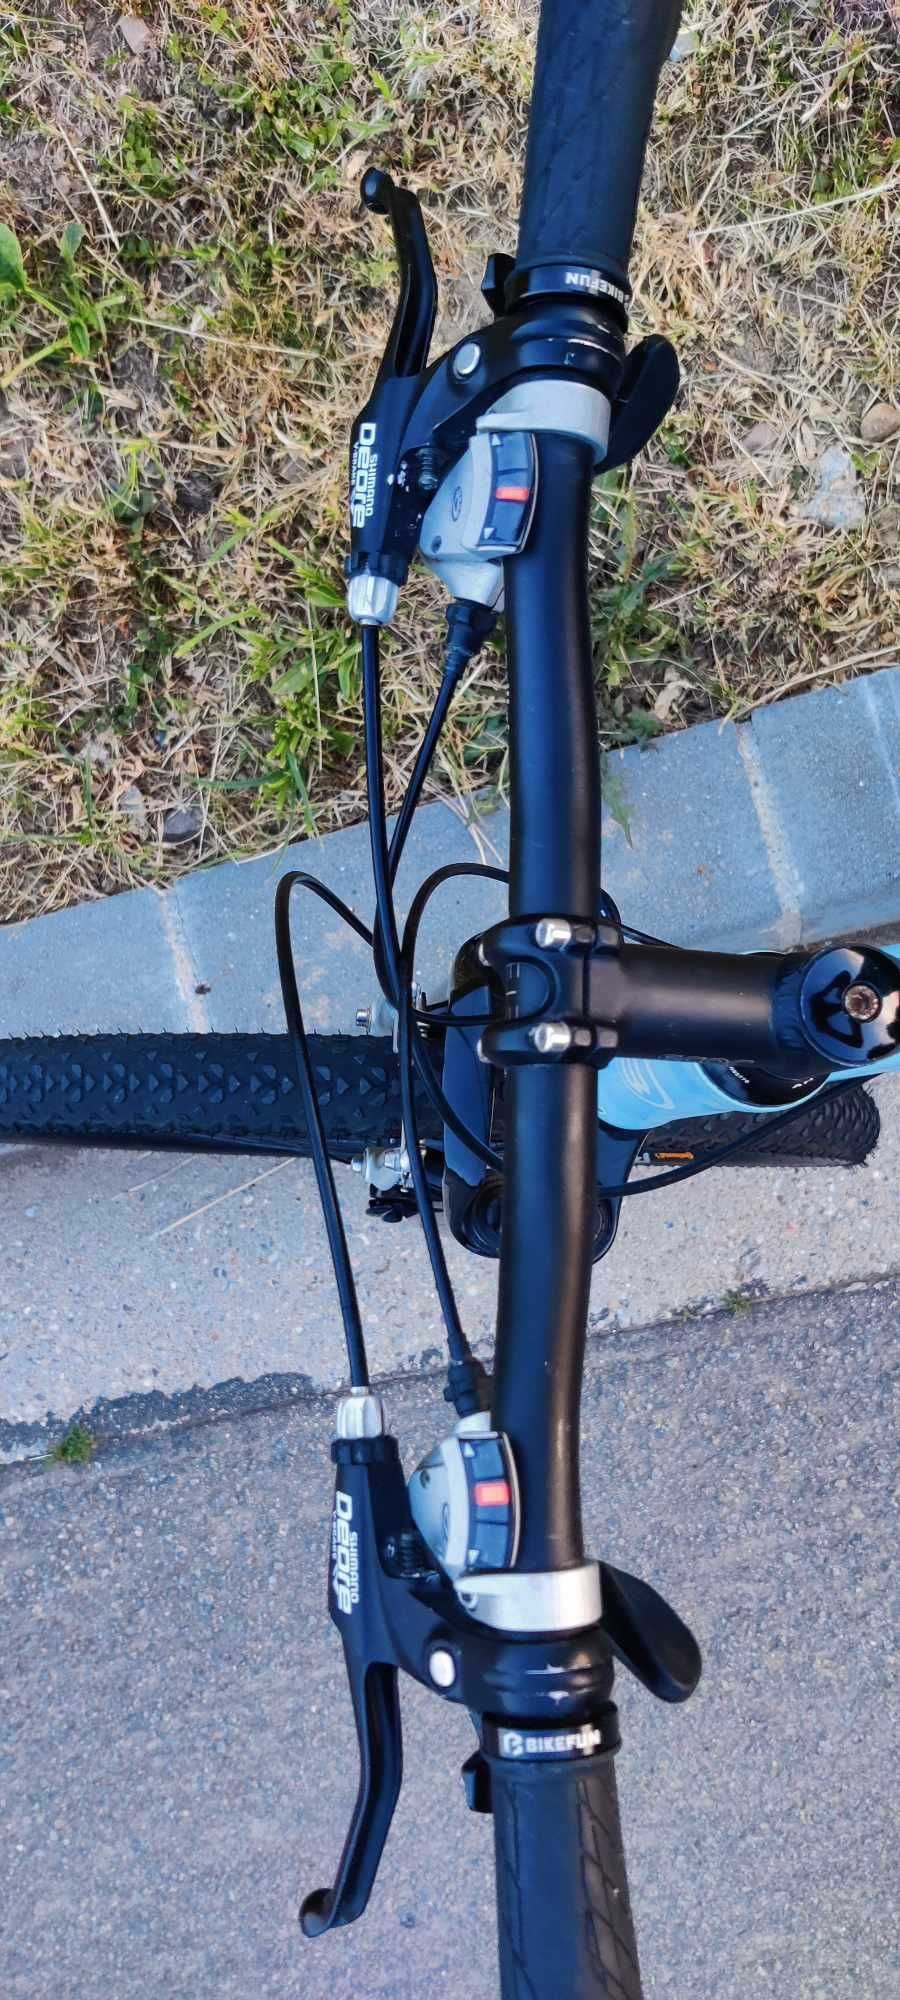 Bicicleta BMC full suspenison mtb